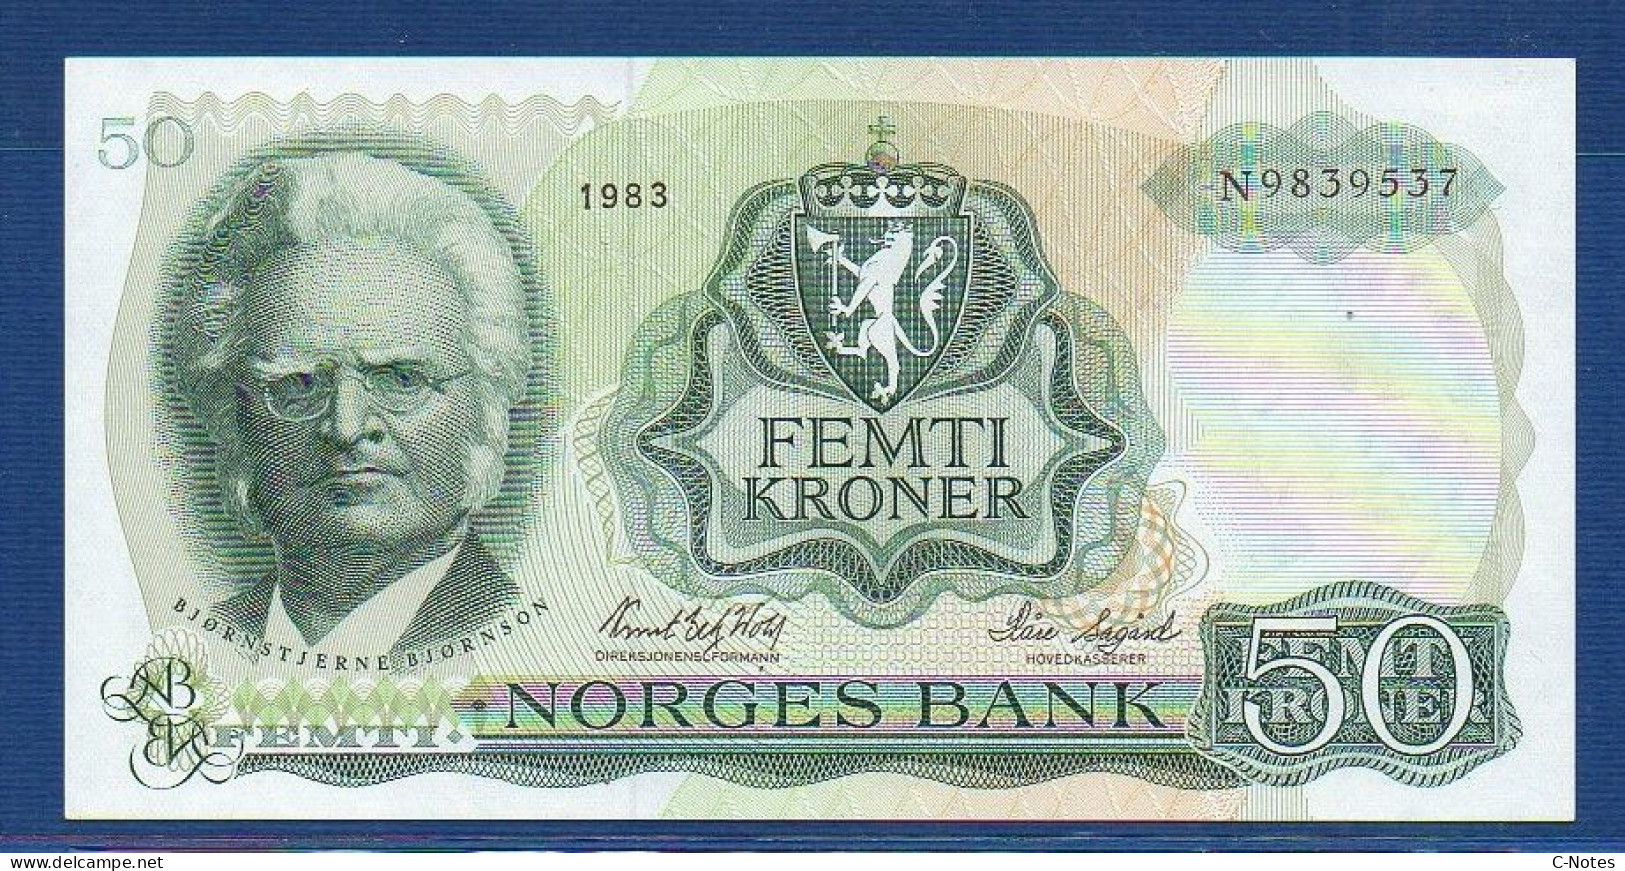 NORWAY - P.37d – 50 Kroner 1983 XF/aUNC, S/n N9839537 - Norway